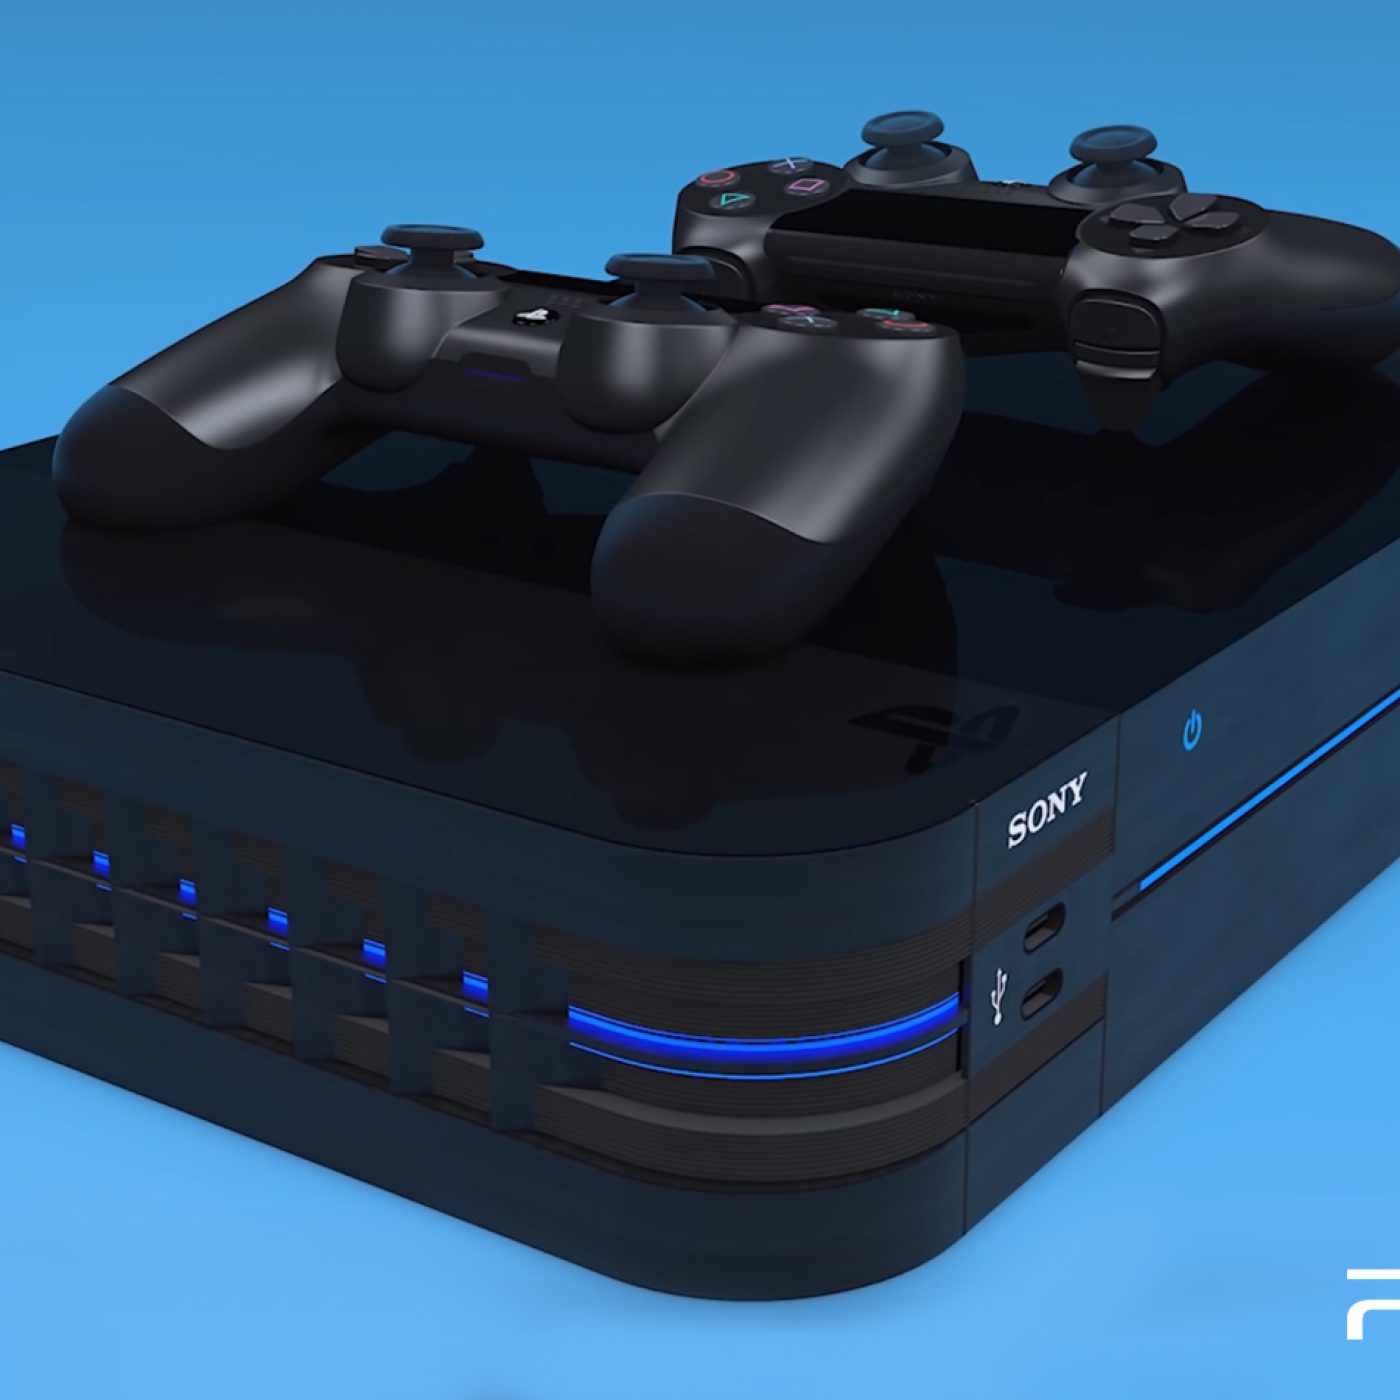 PS5 Pro Leaks Unveil Amazing Hardware Upgrades